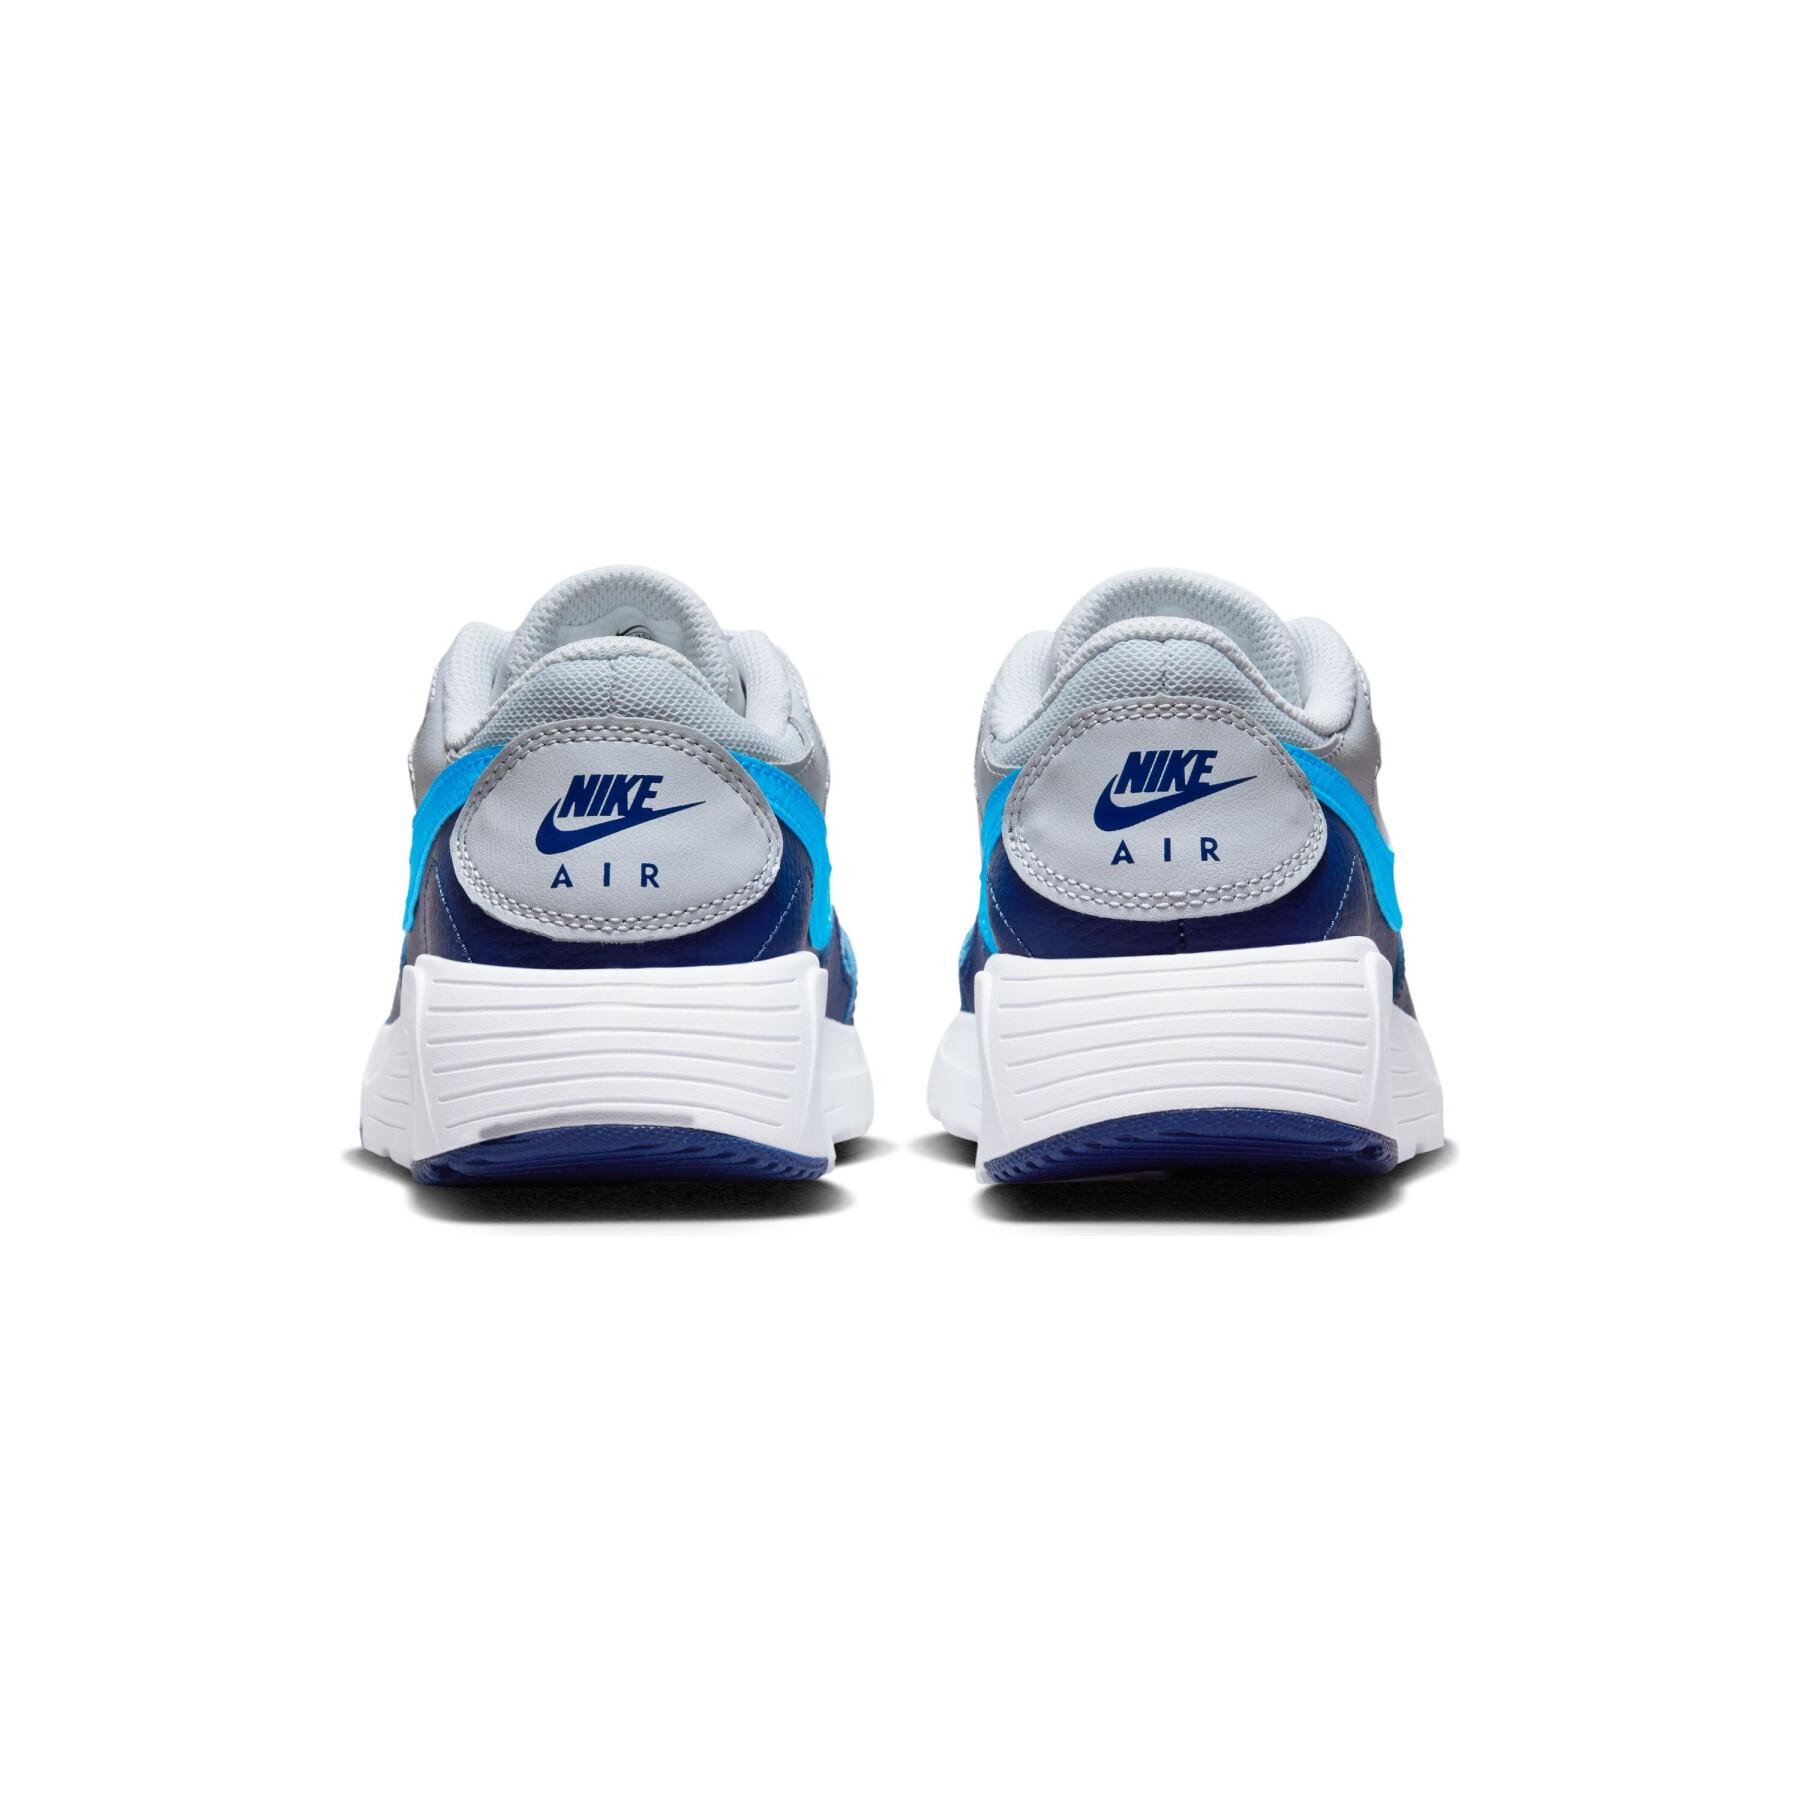 Children's sneakers Nike Air Max SC